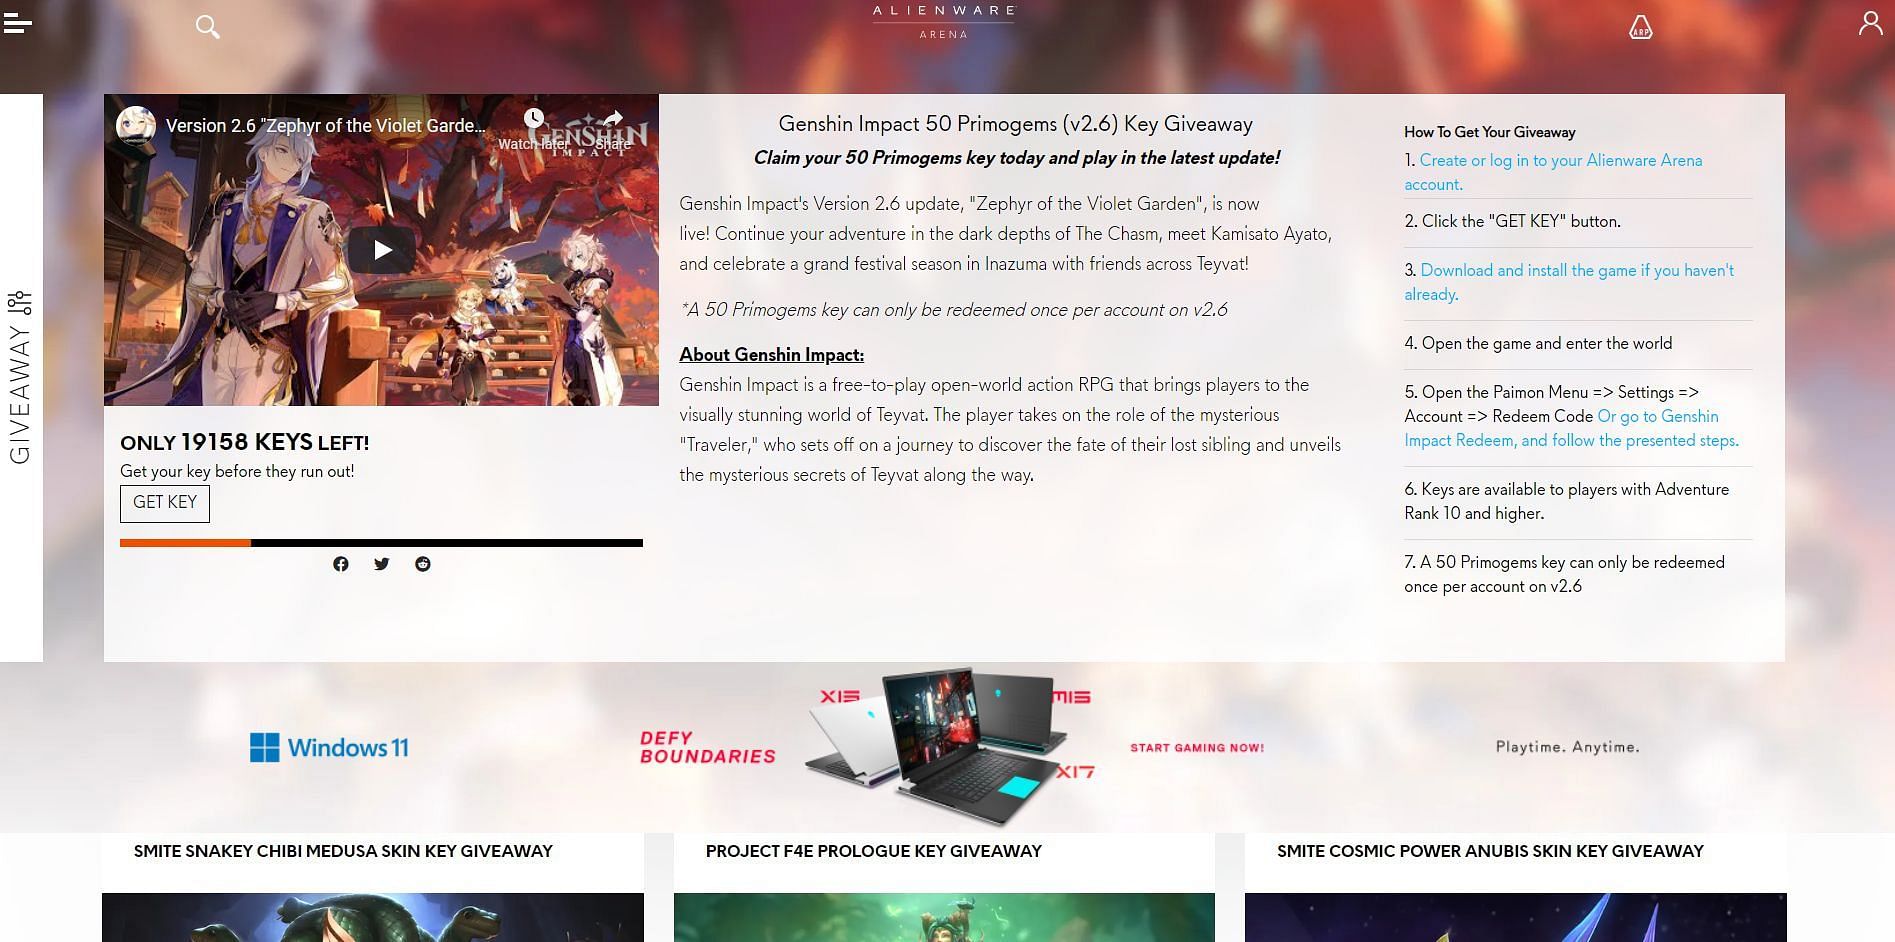 Alienware Arena website for Genshin Impact giveaway (Image via Alienware Arena)